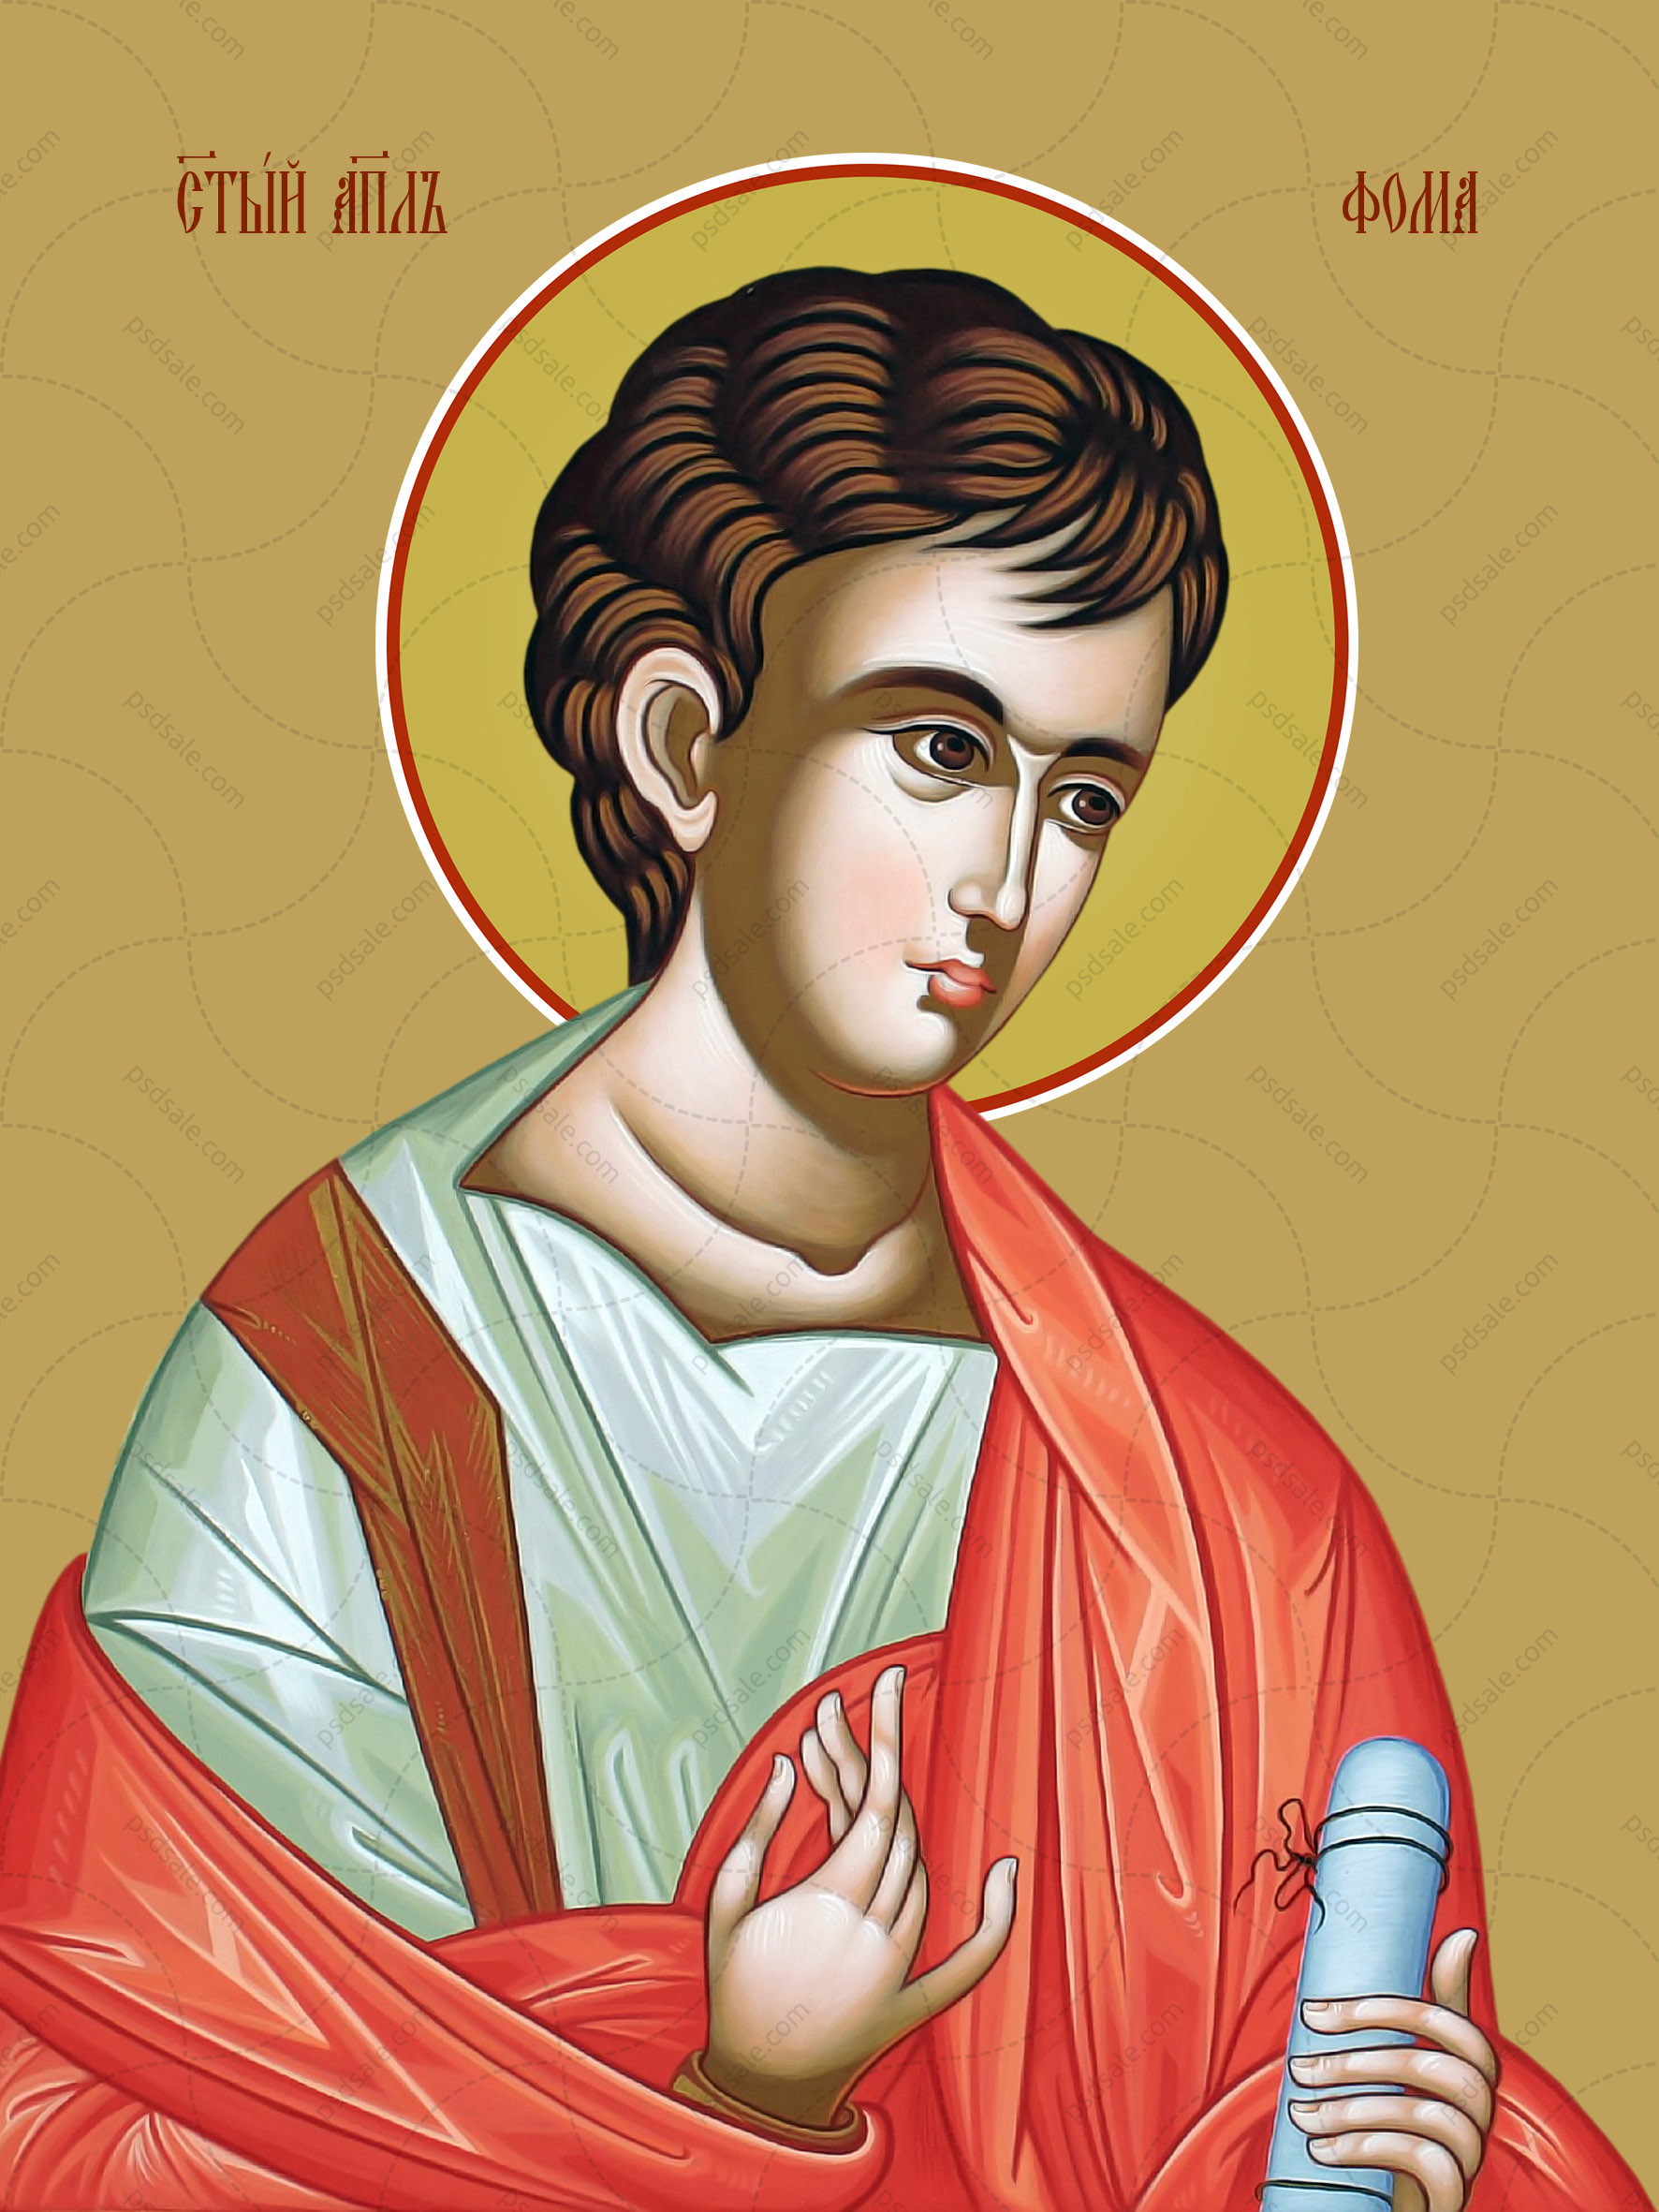 Thomas the apostle